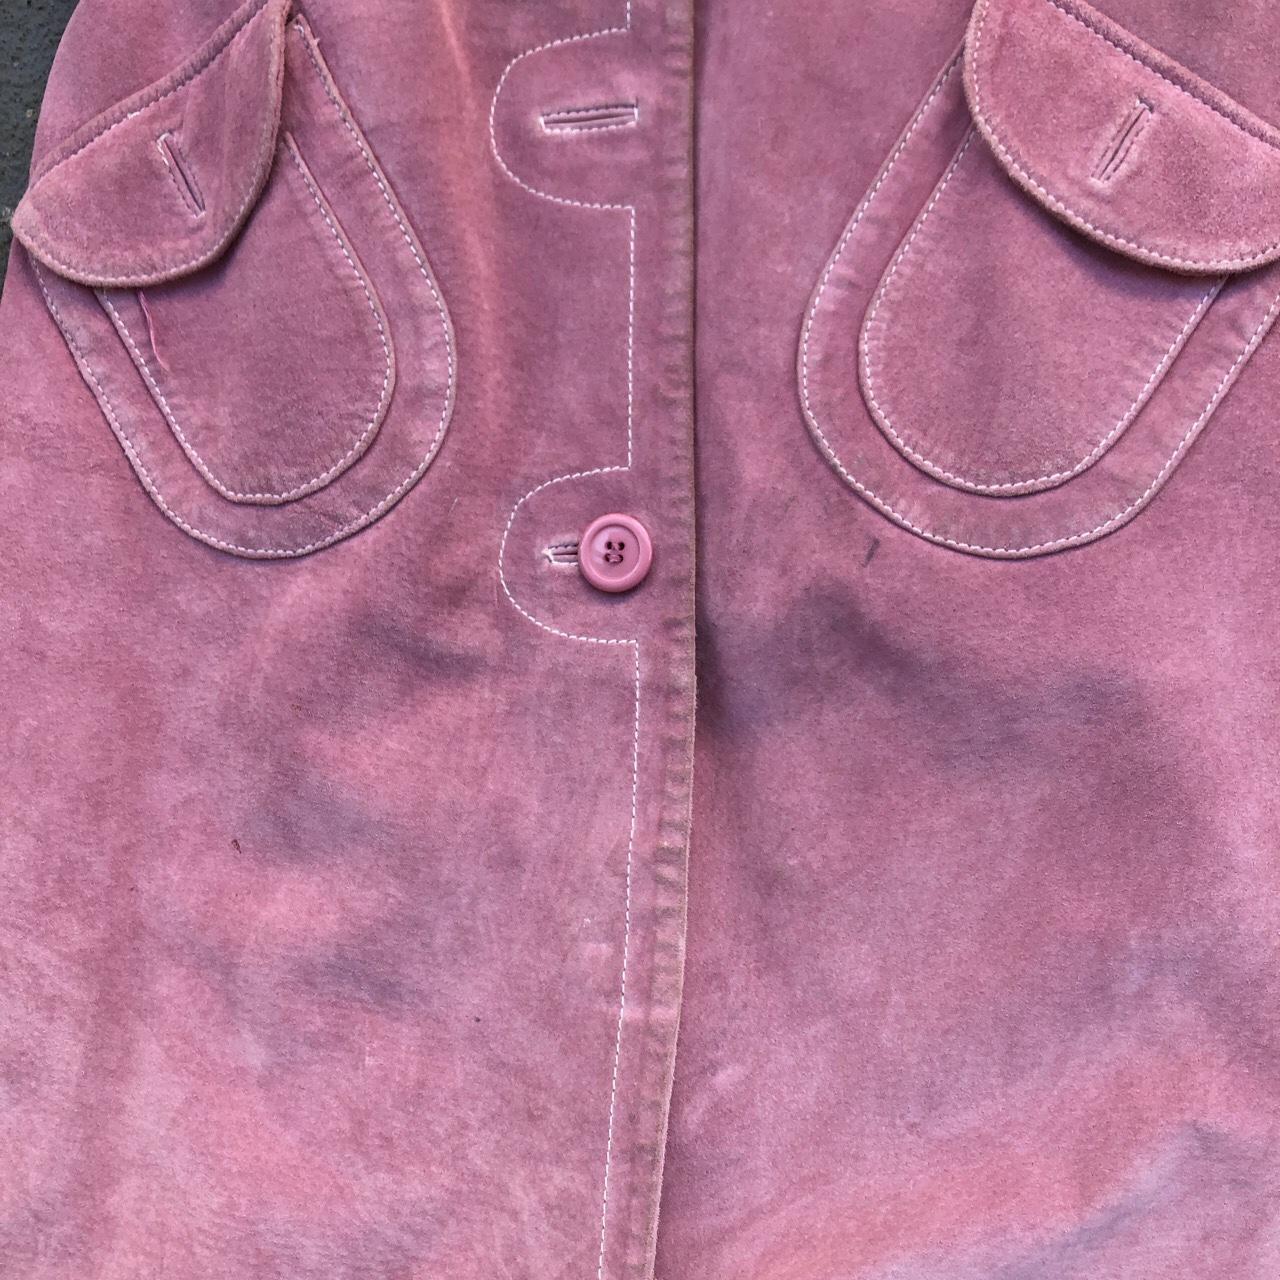 XOXO Women's Pink Jacket (6)